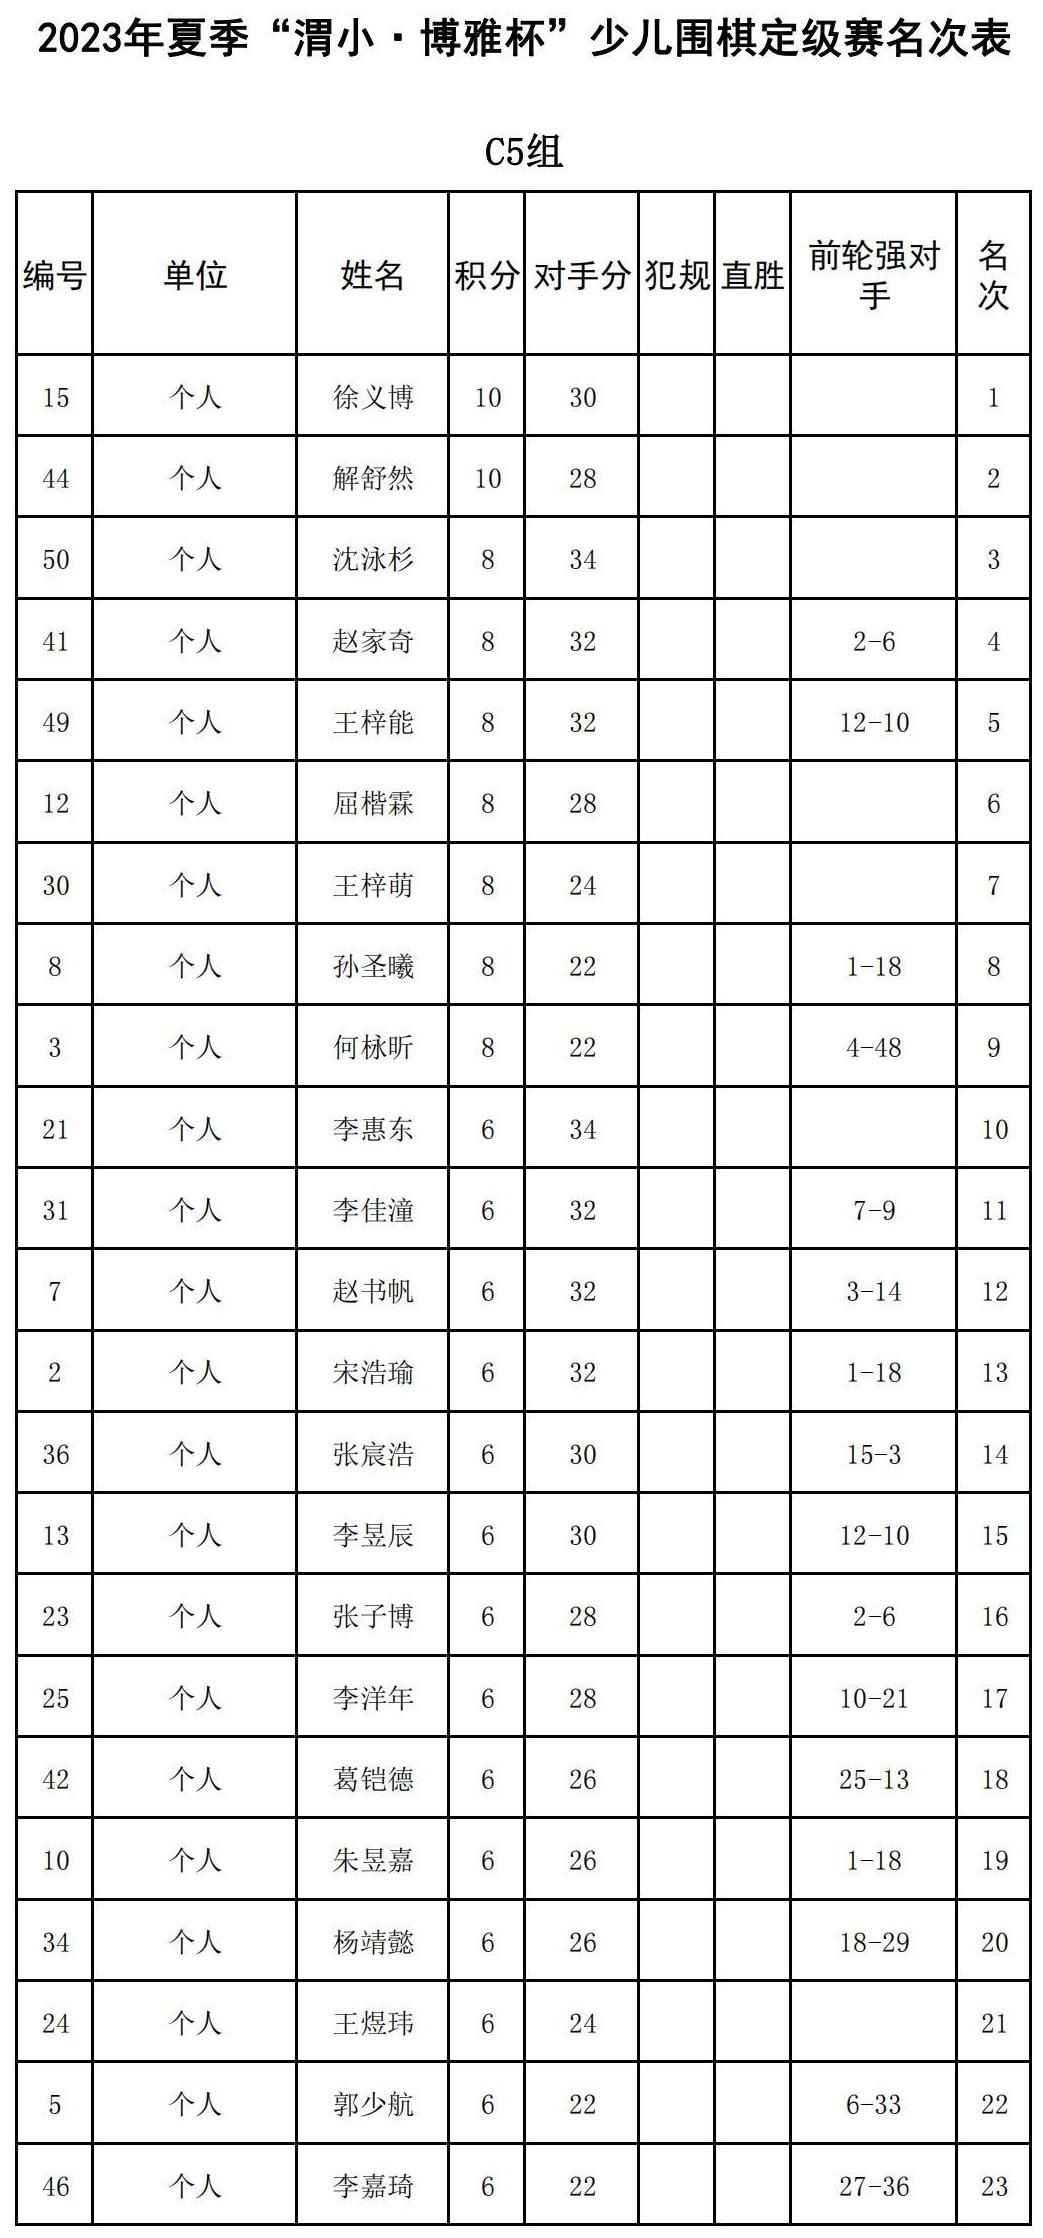 2023年夏季“渭小·博雅杯”少儿围棋定级赛C5组(名次表)_00.jpg